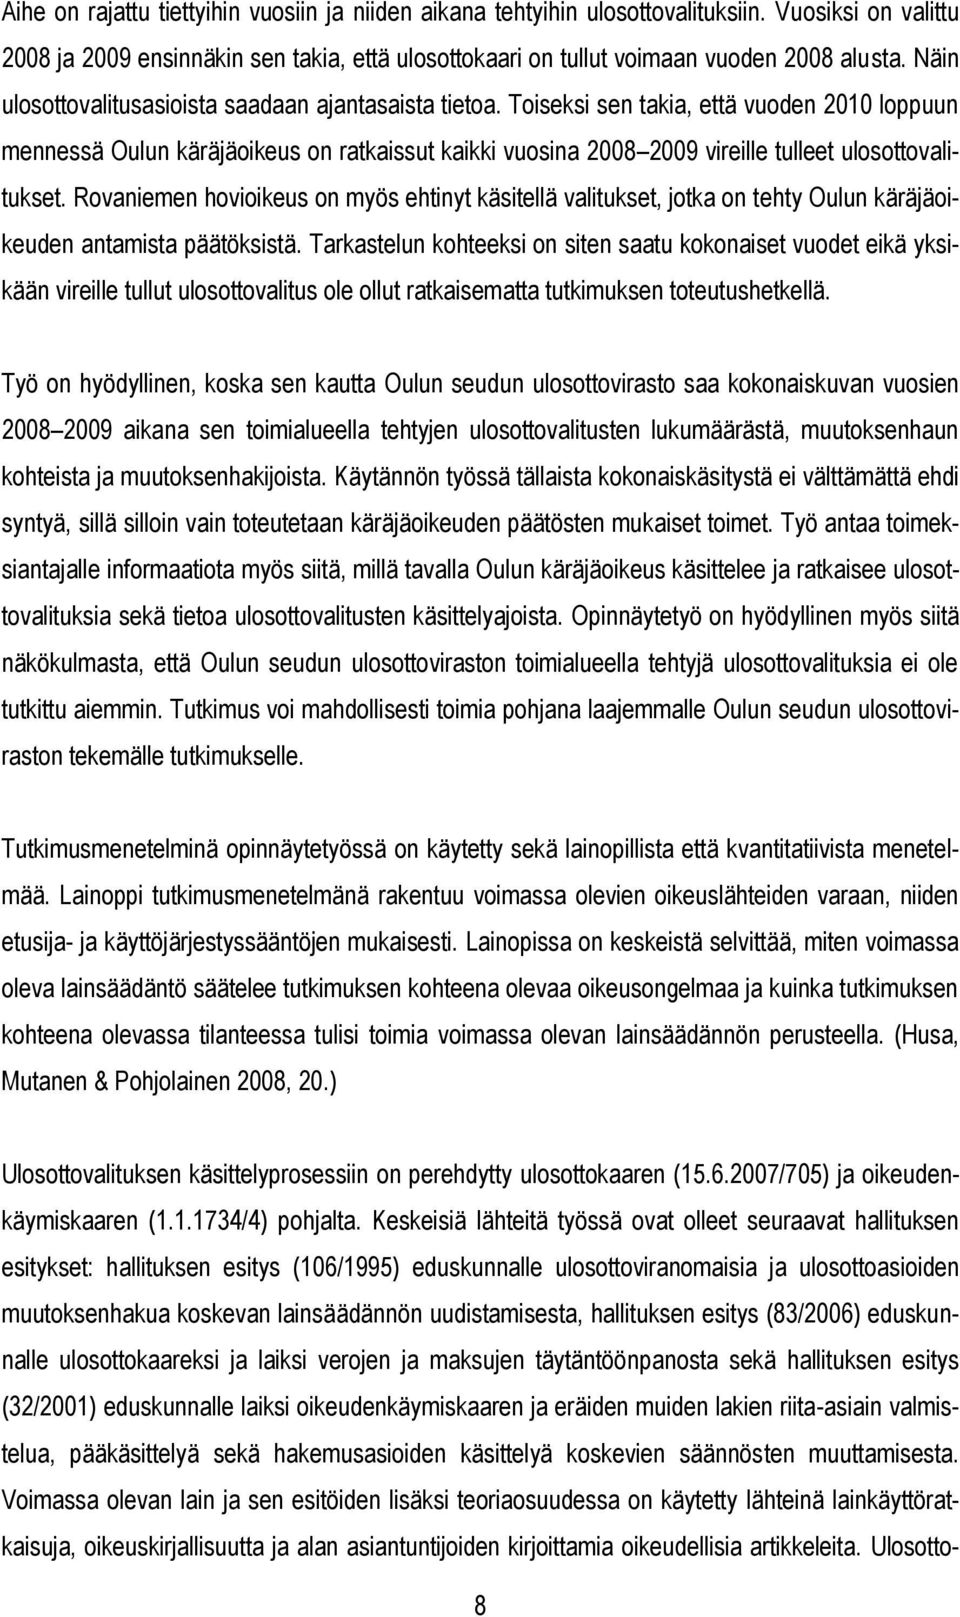 Toiseksi sen takia, että vuoden 2010 loppuun mennessä Oulun käräjäoikeus on ratkaissut kaikki vuosina 2008 2009 vireille tulleet ulosottovalitukset.